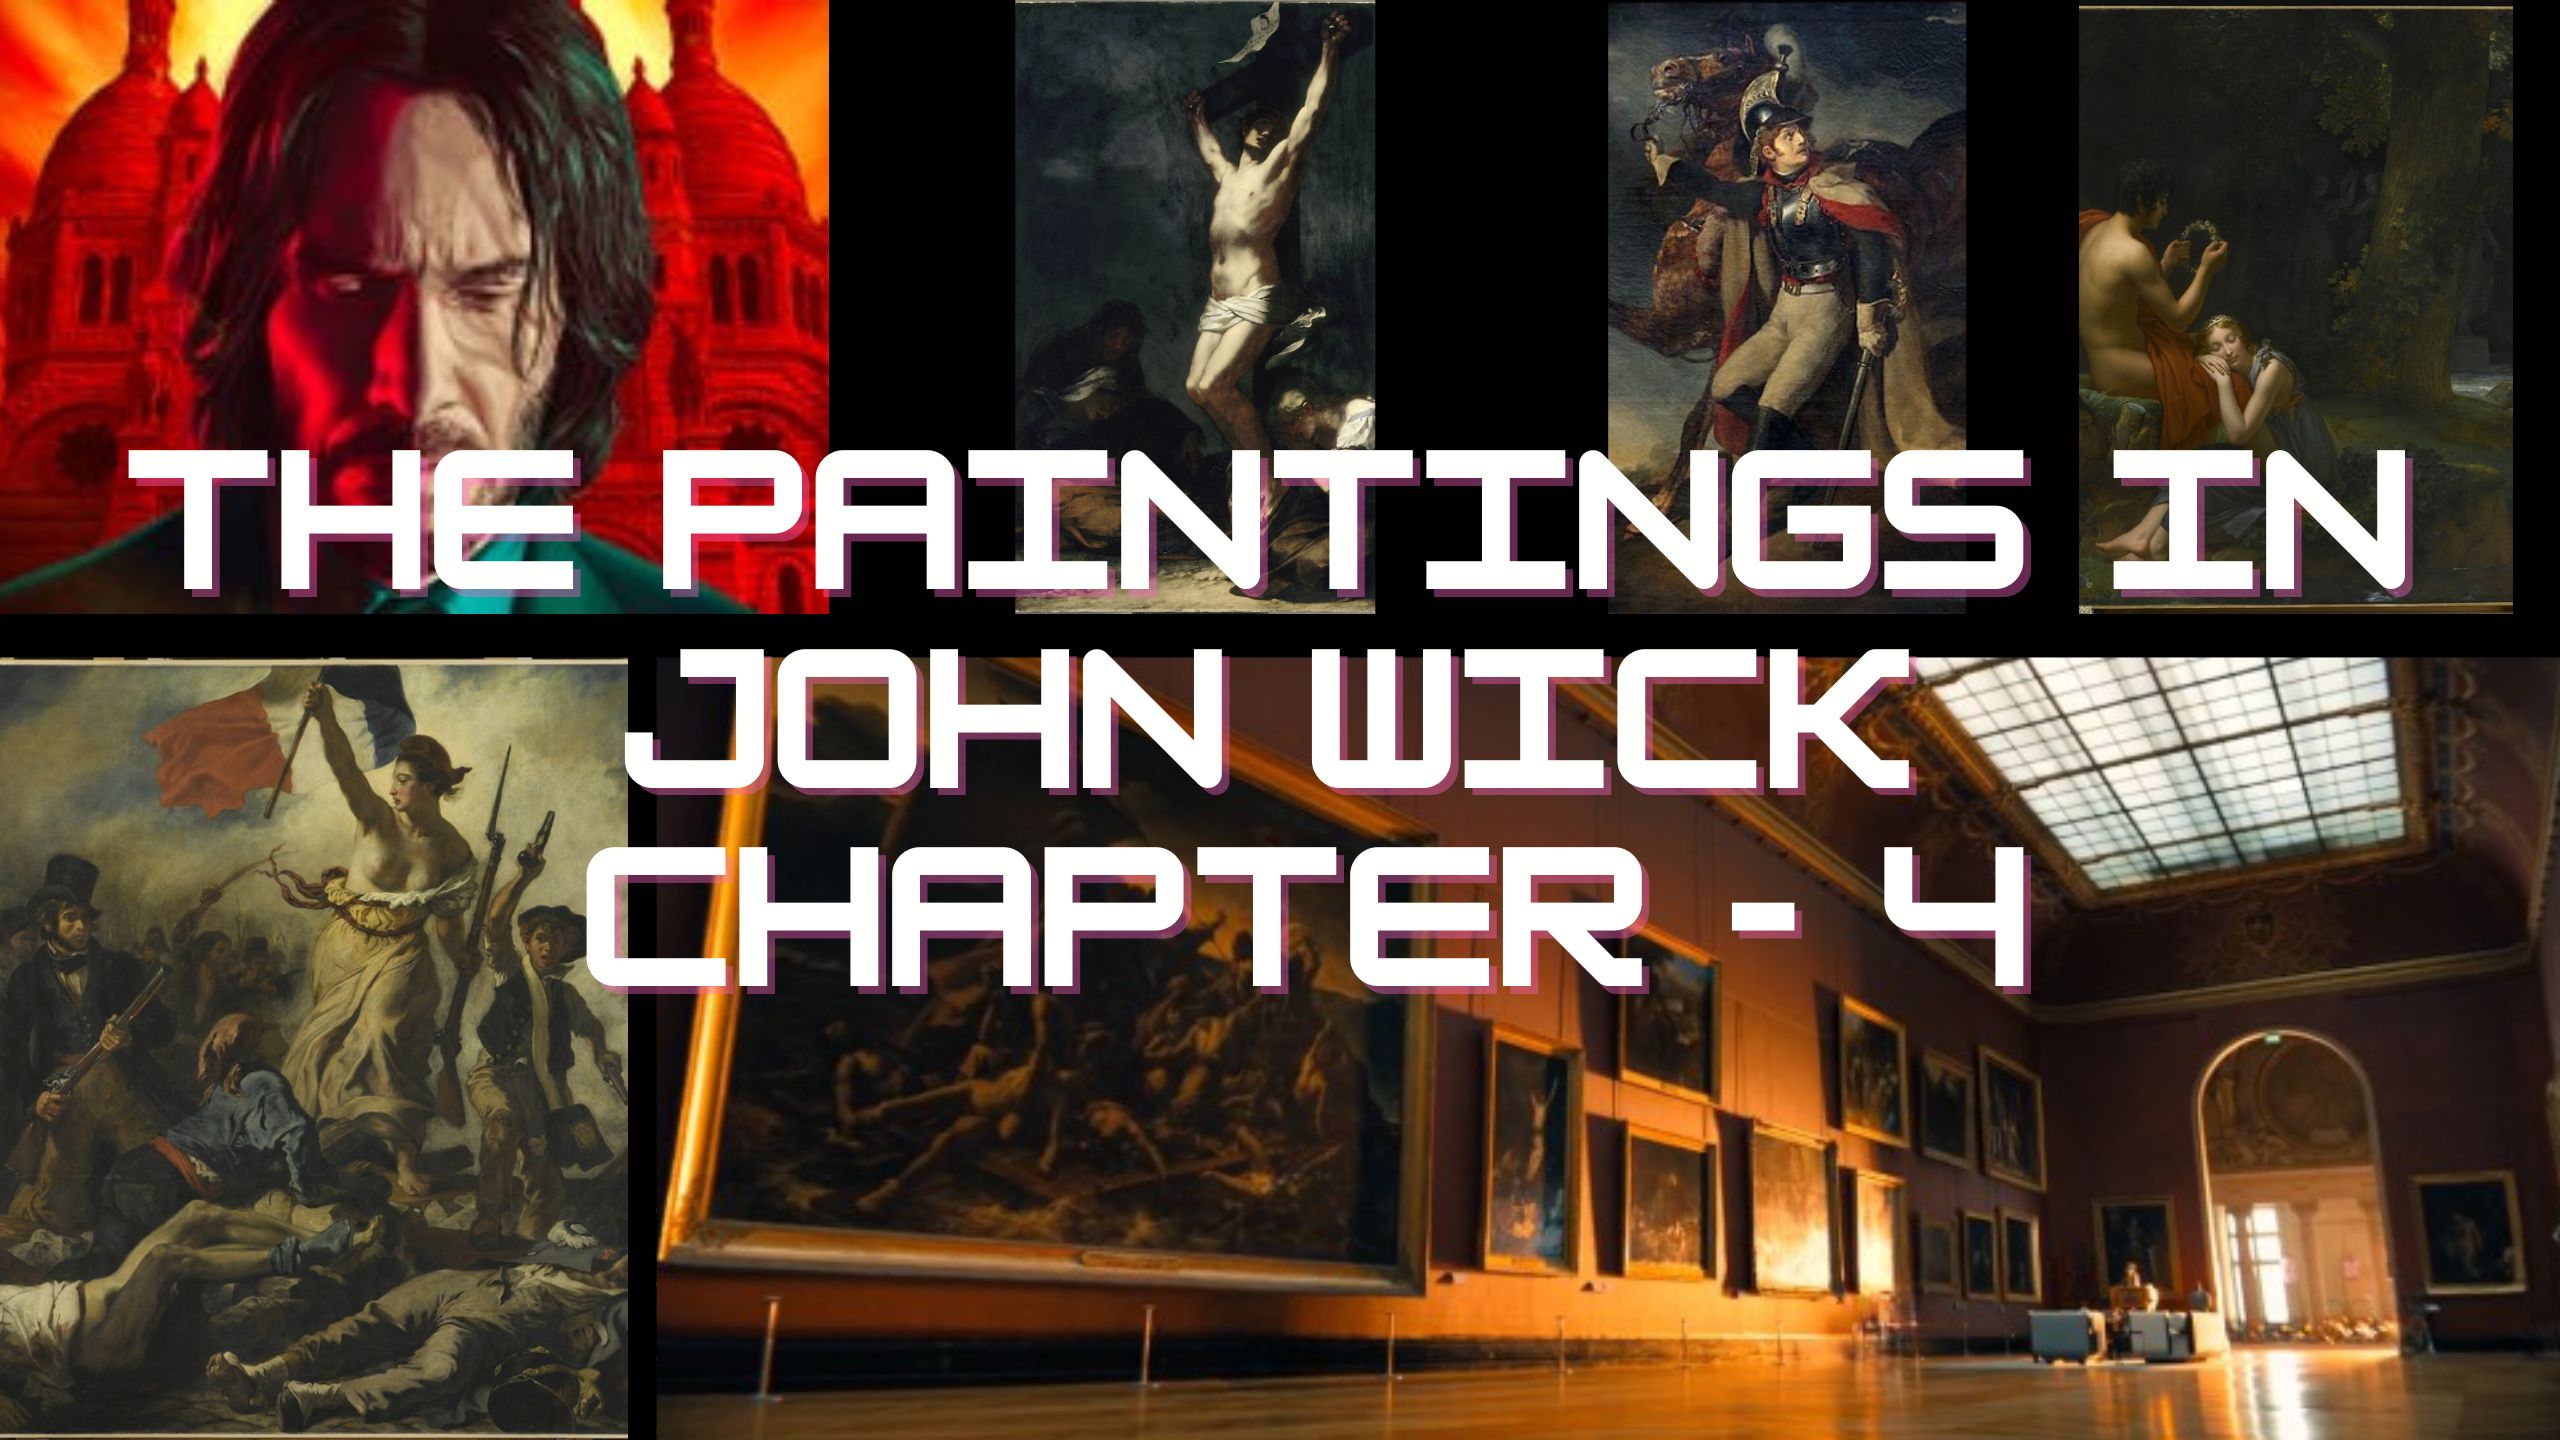 John Wick: Chapter 2 - Wikipedia